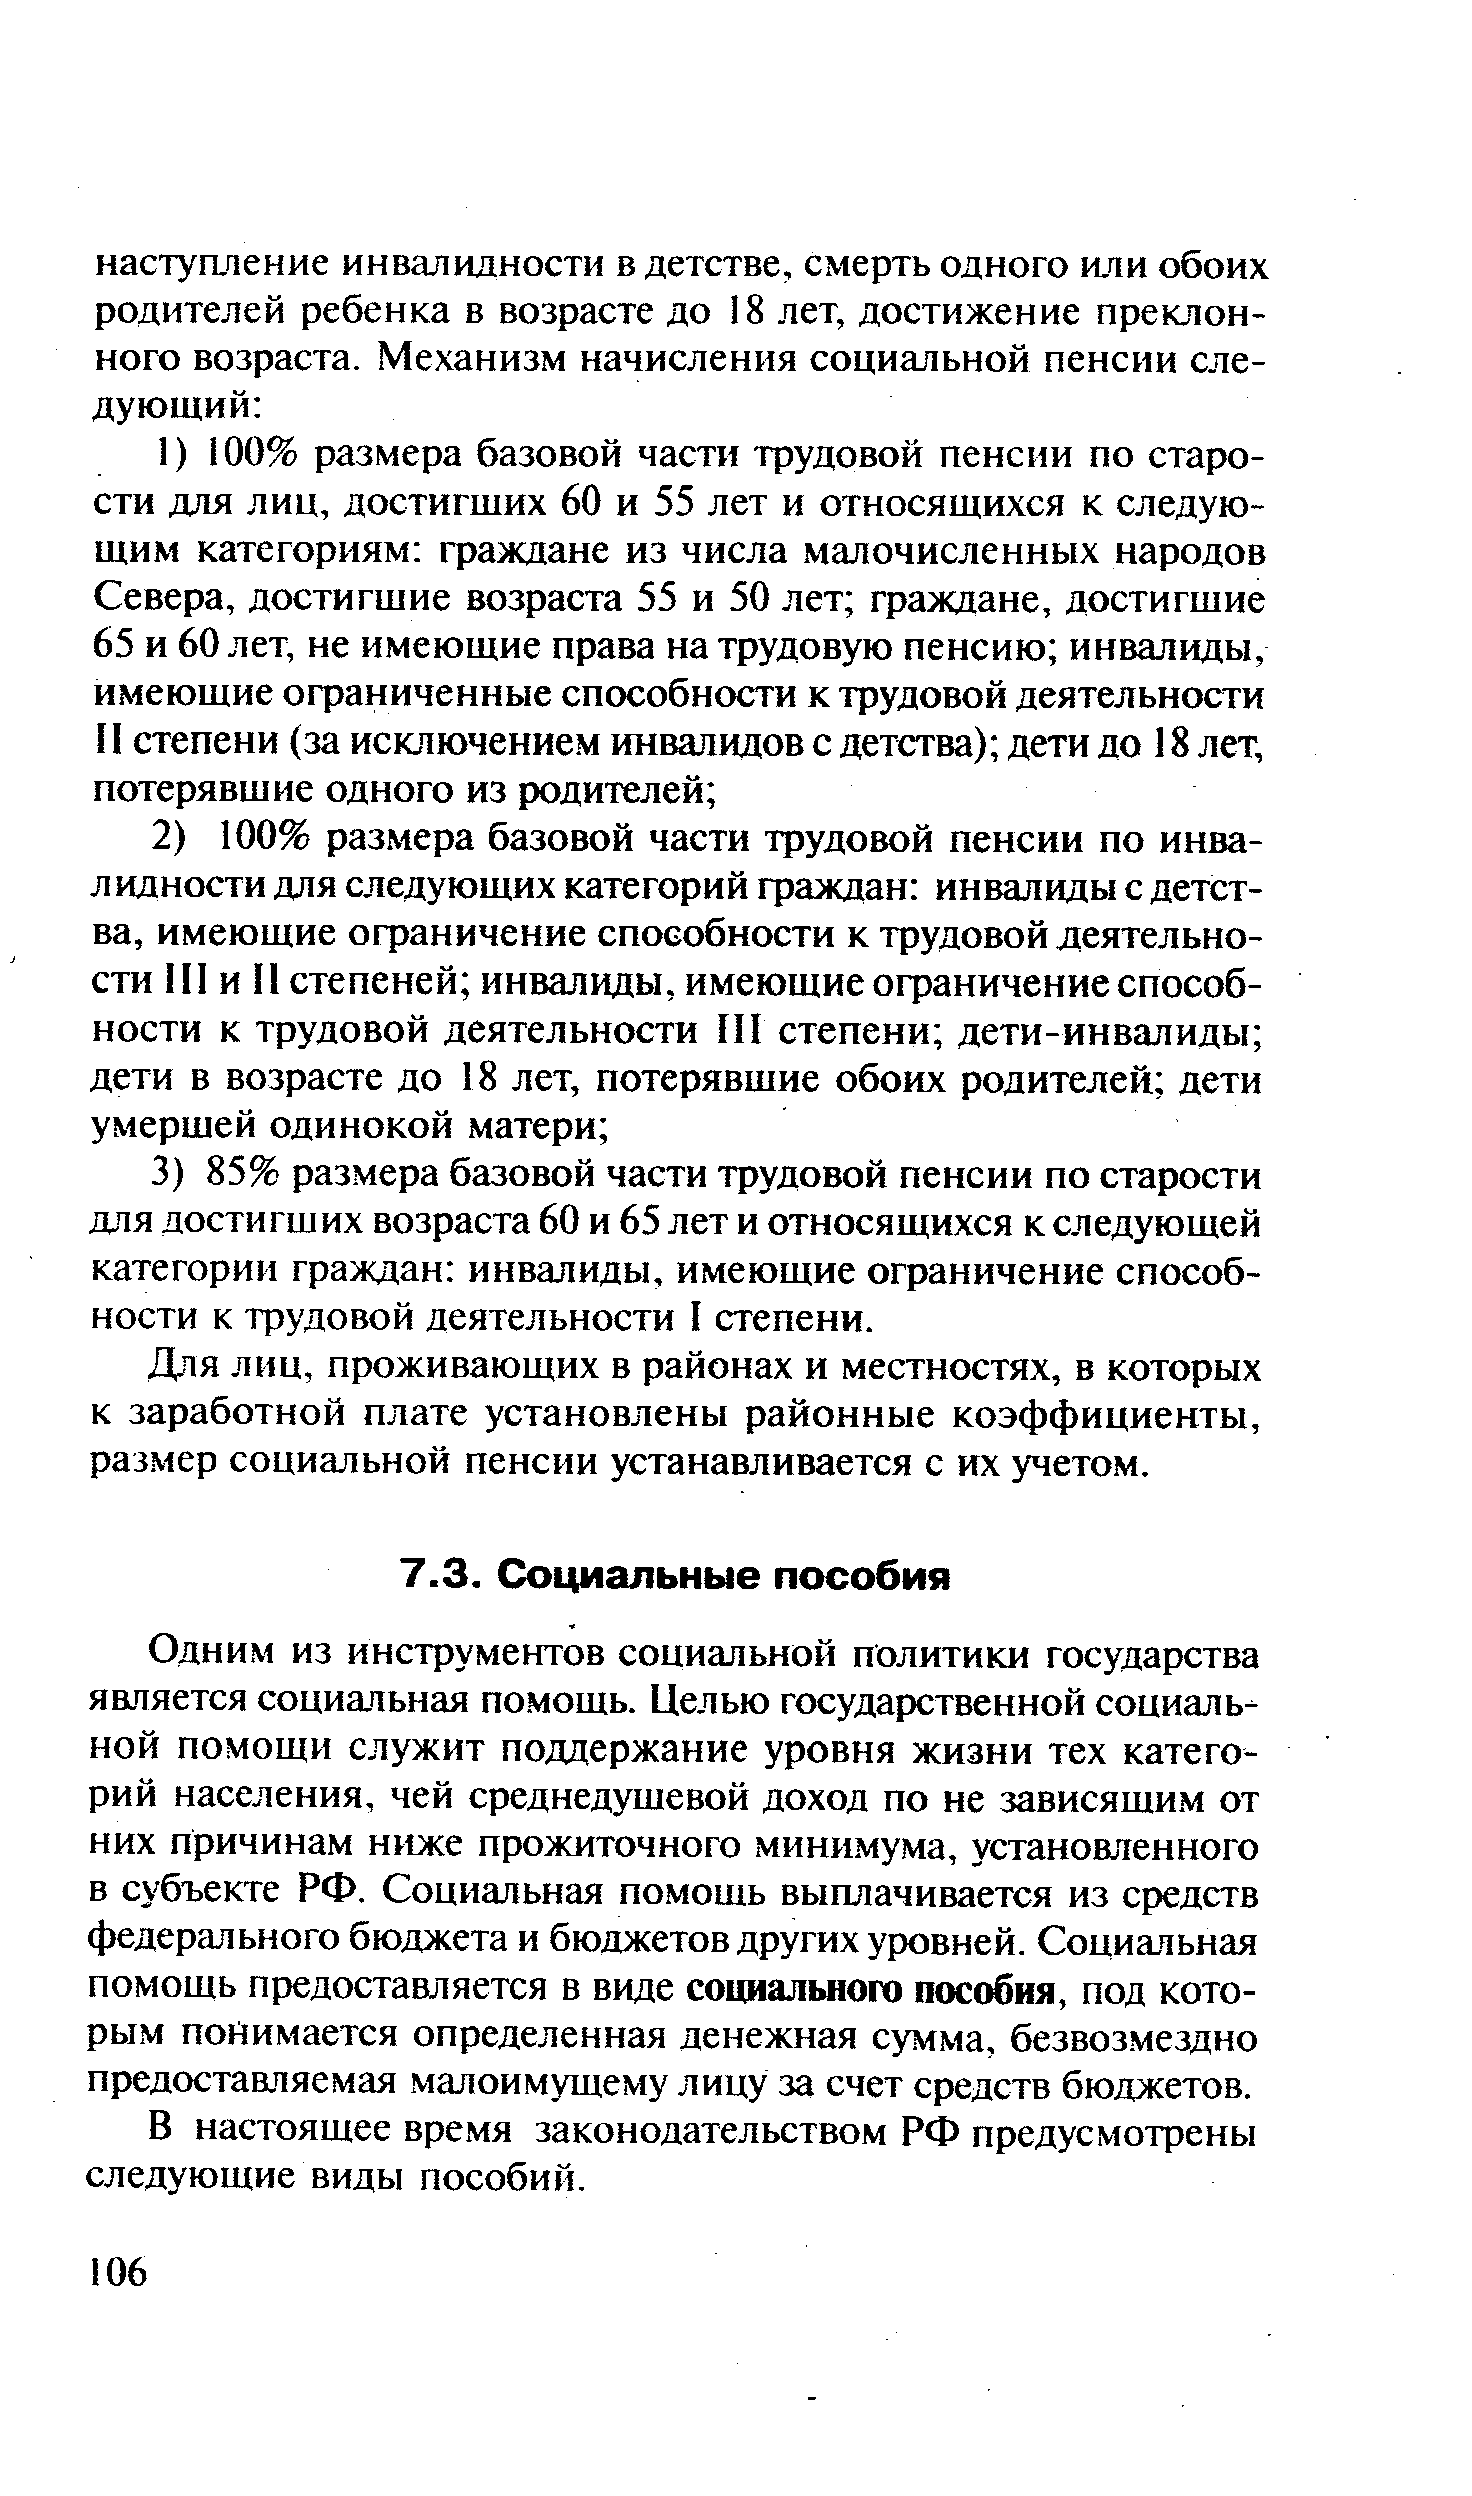 В настоящее время законодательством РФ предусмотрены следующие виды пособий.
